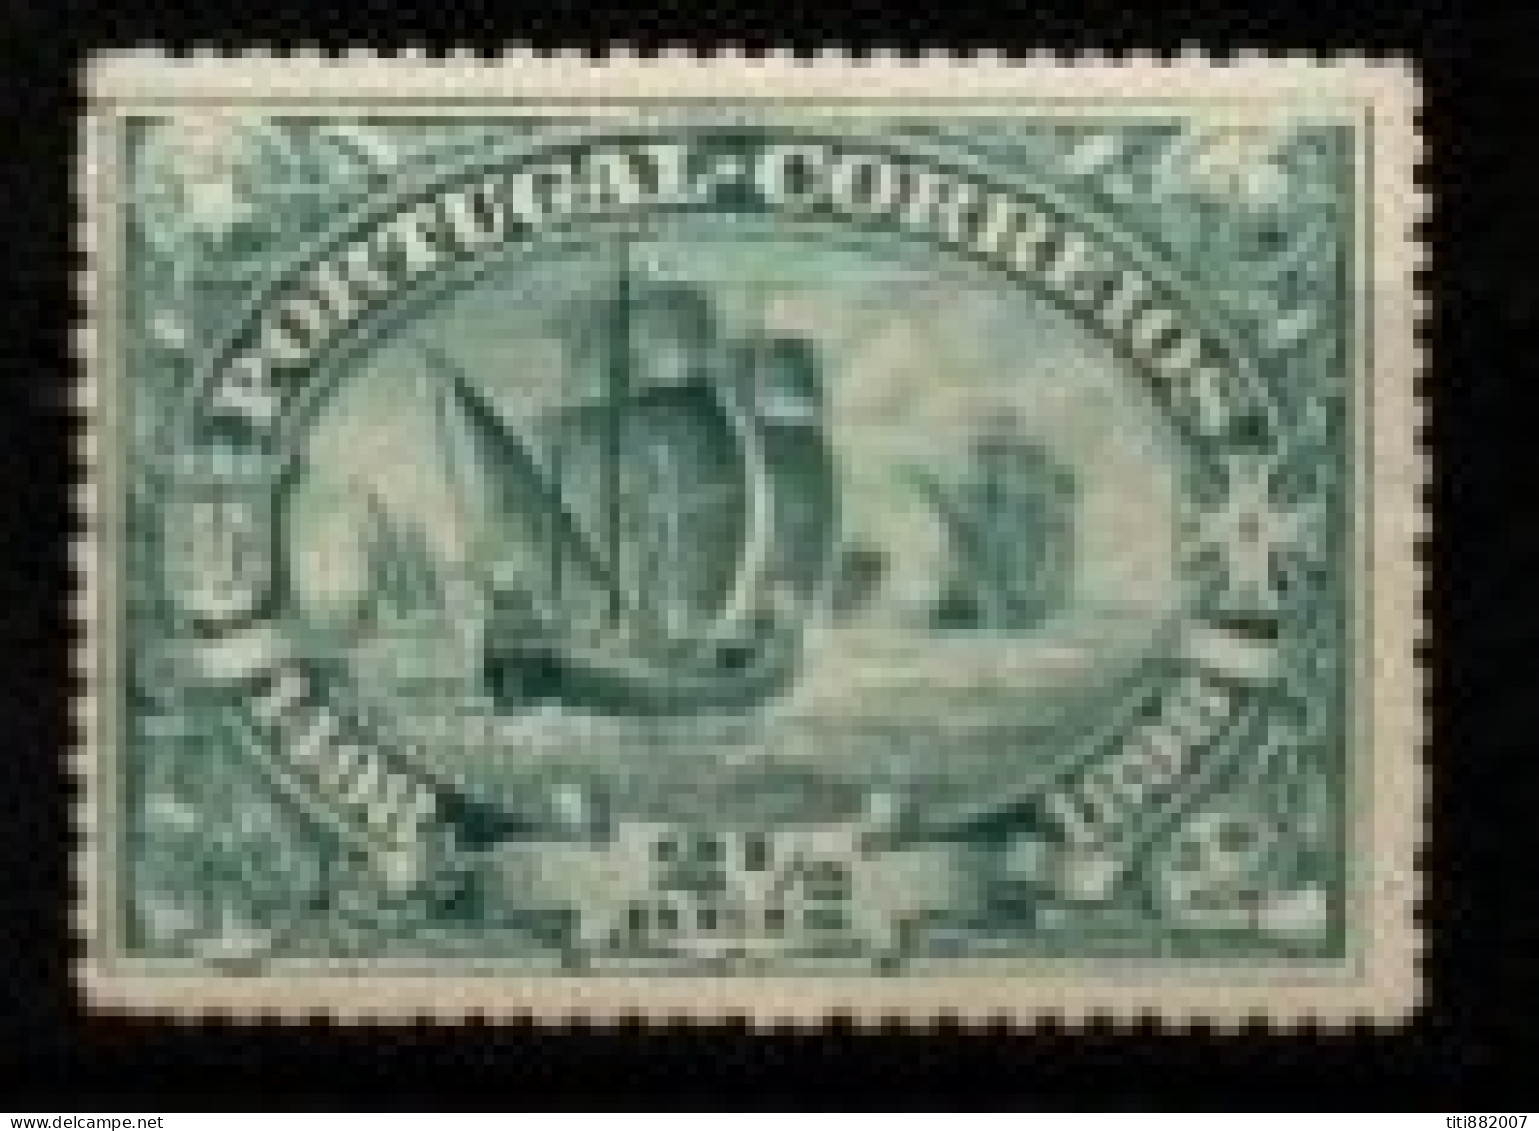 PORTUGAL     -    1898 .  Y&T N° 146** - Unused Stamps